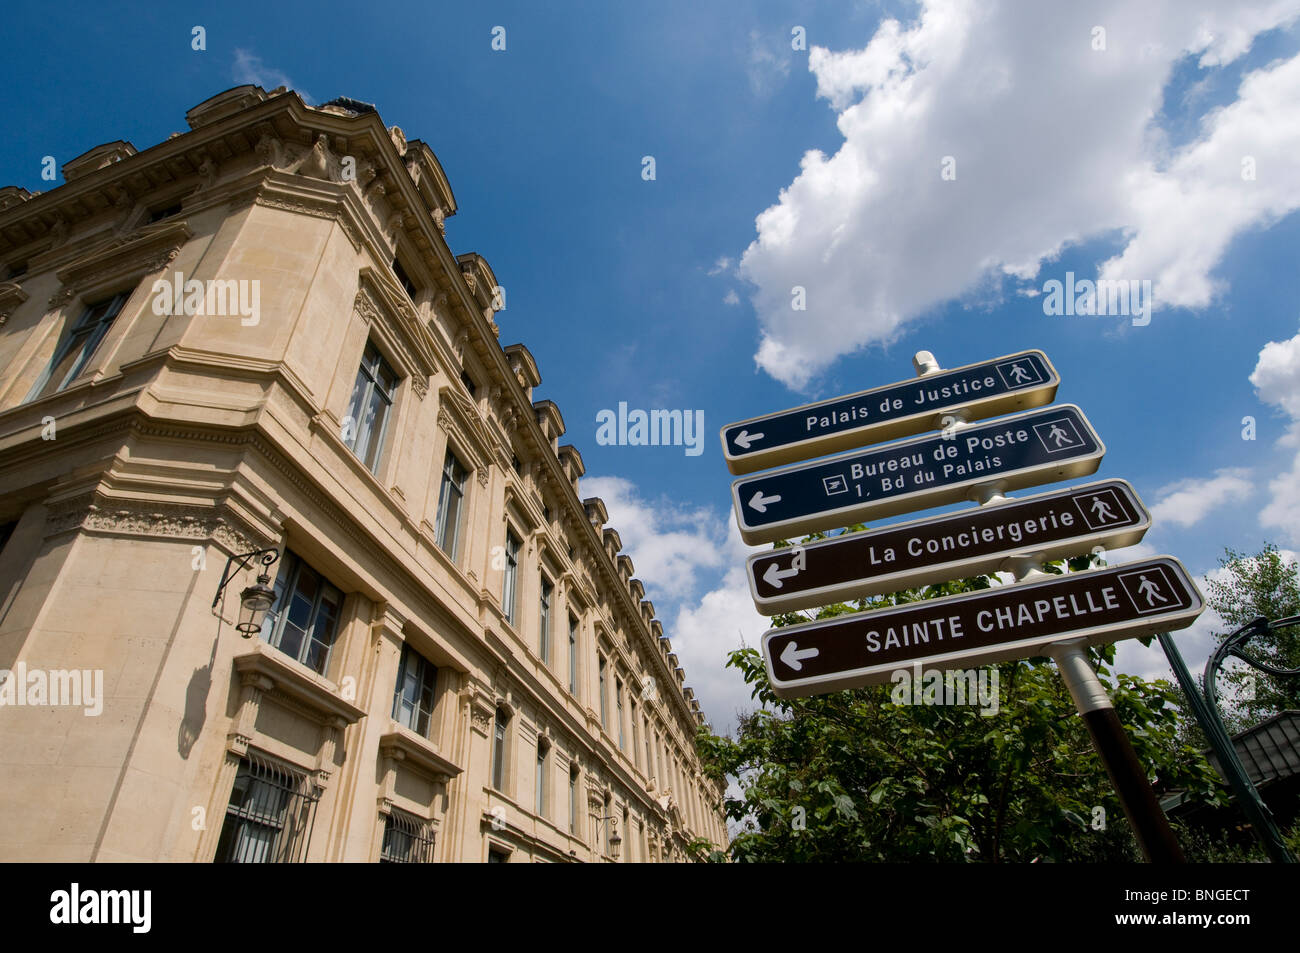 Street name signs in a city, Rue De La Cite, Paris, Ile-de-France, France Stock Photo